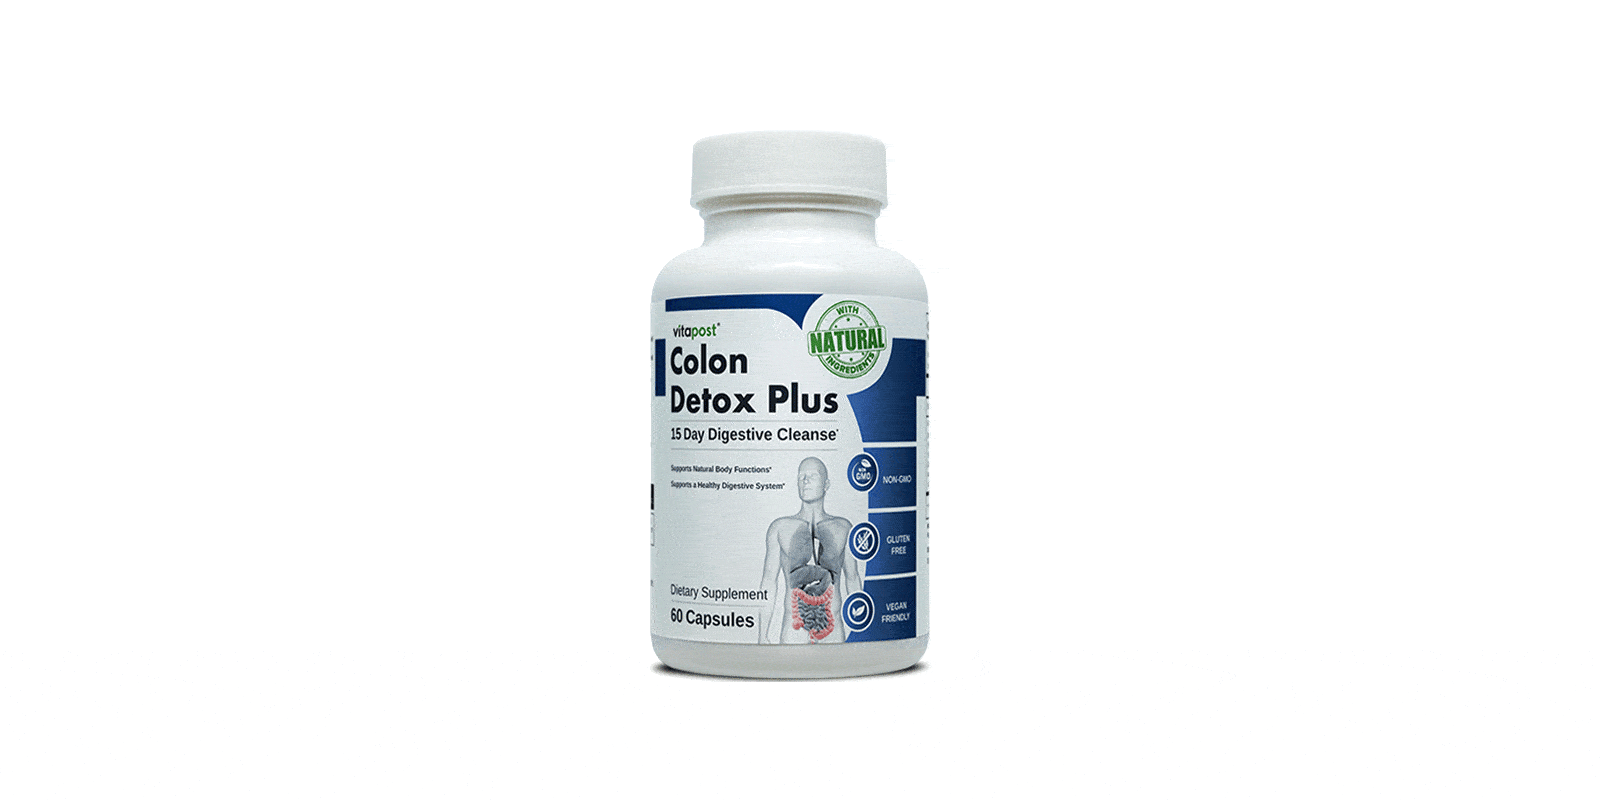 Colon Detox Plus Supplement